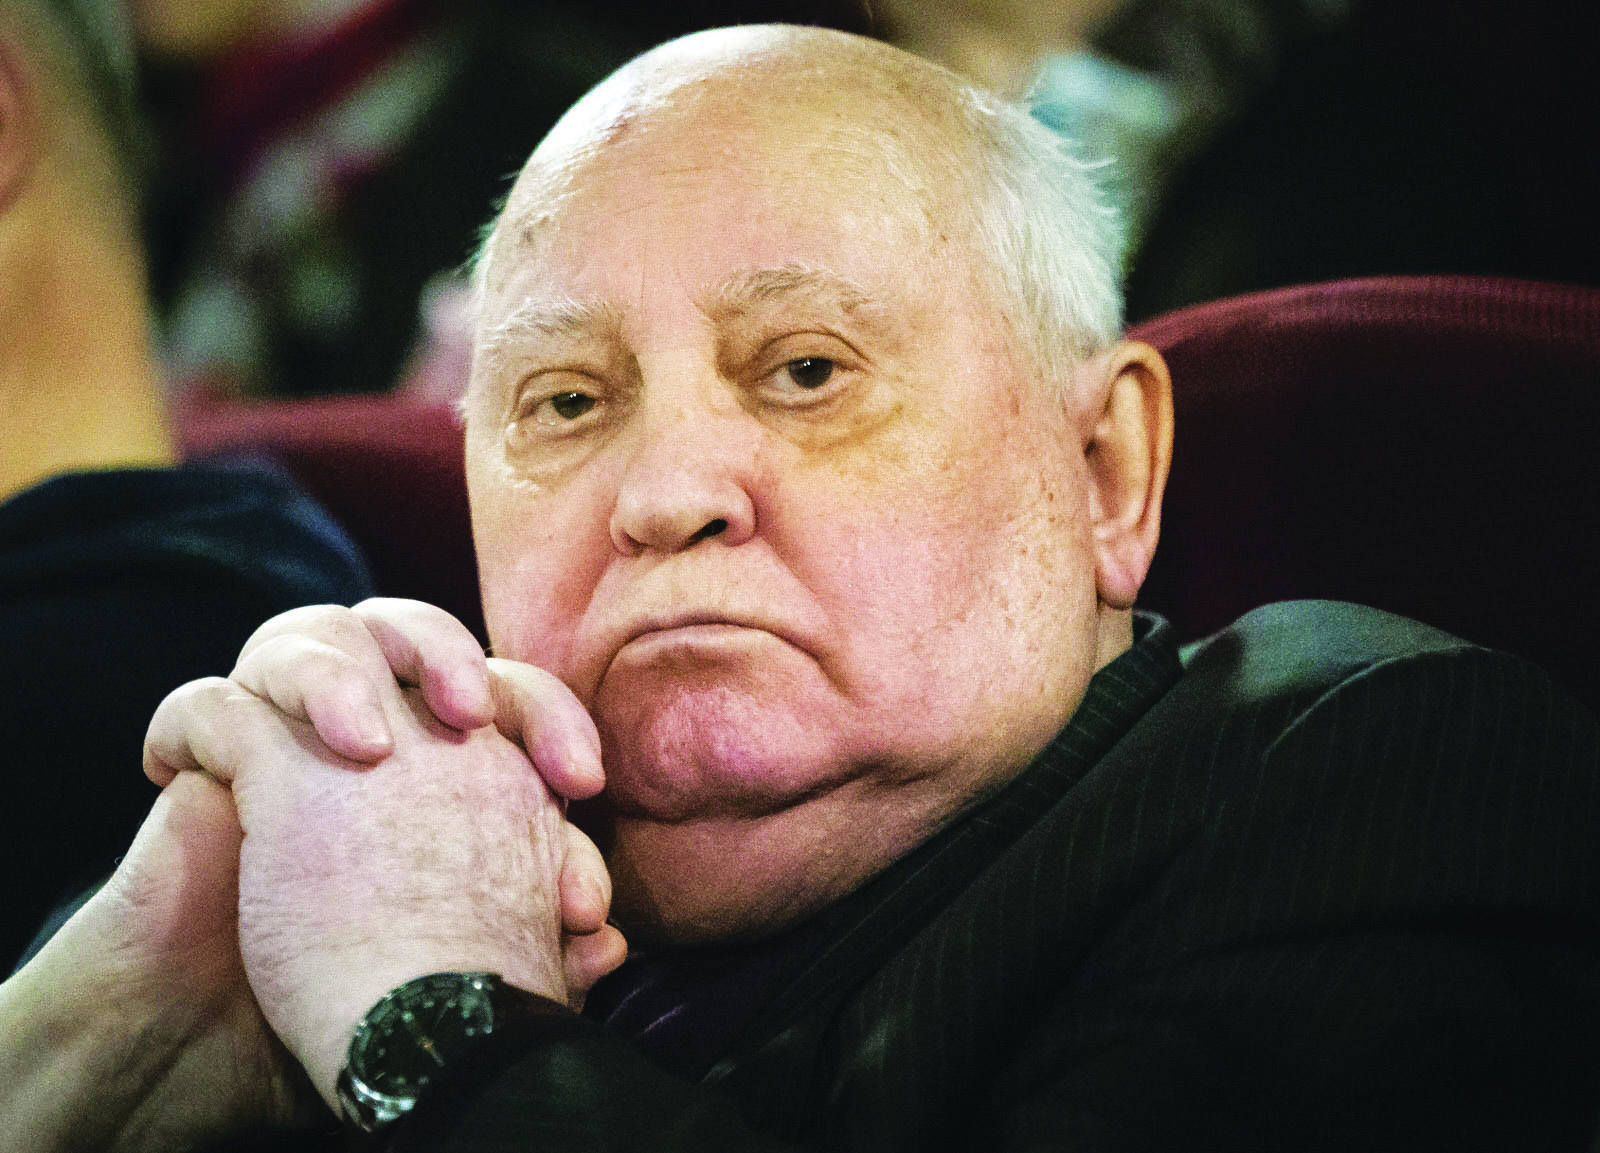 mikha-l-gorbatchev-dernier-dirigeant-de-l-urss-est-mort-91-ans-le